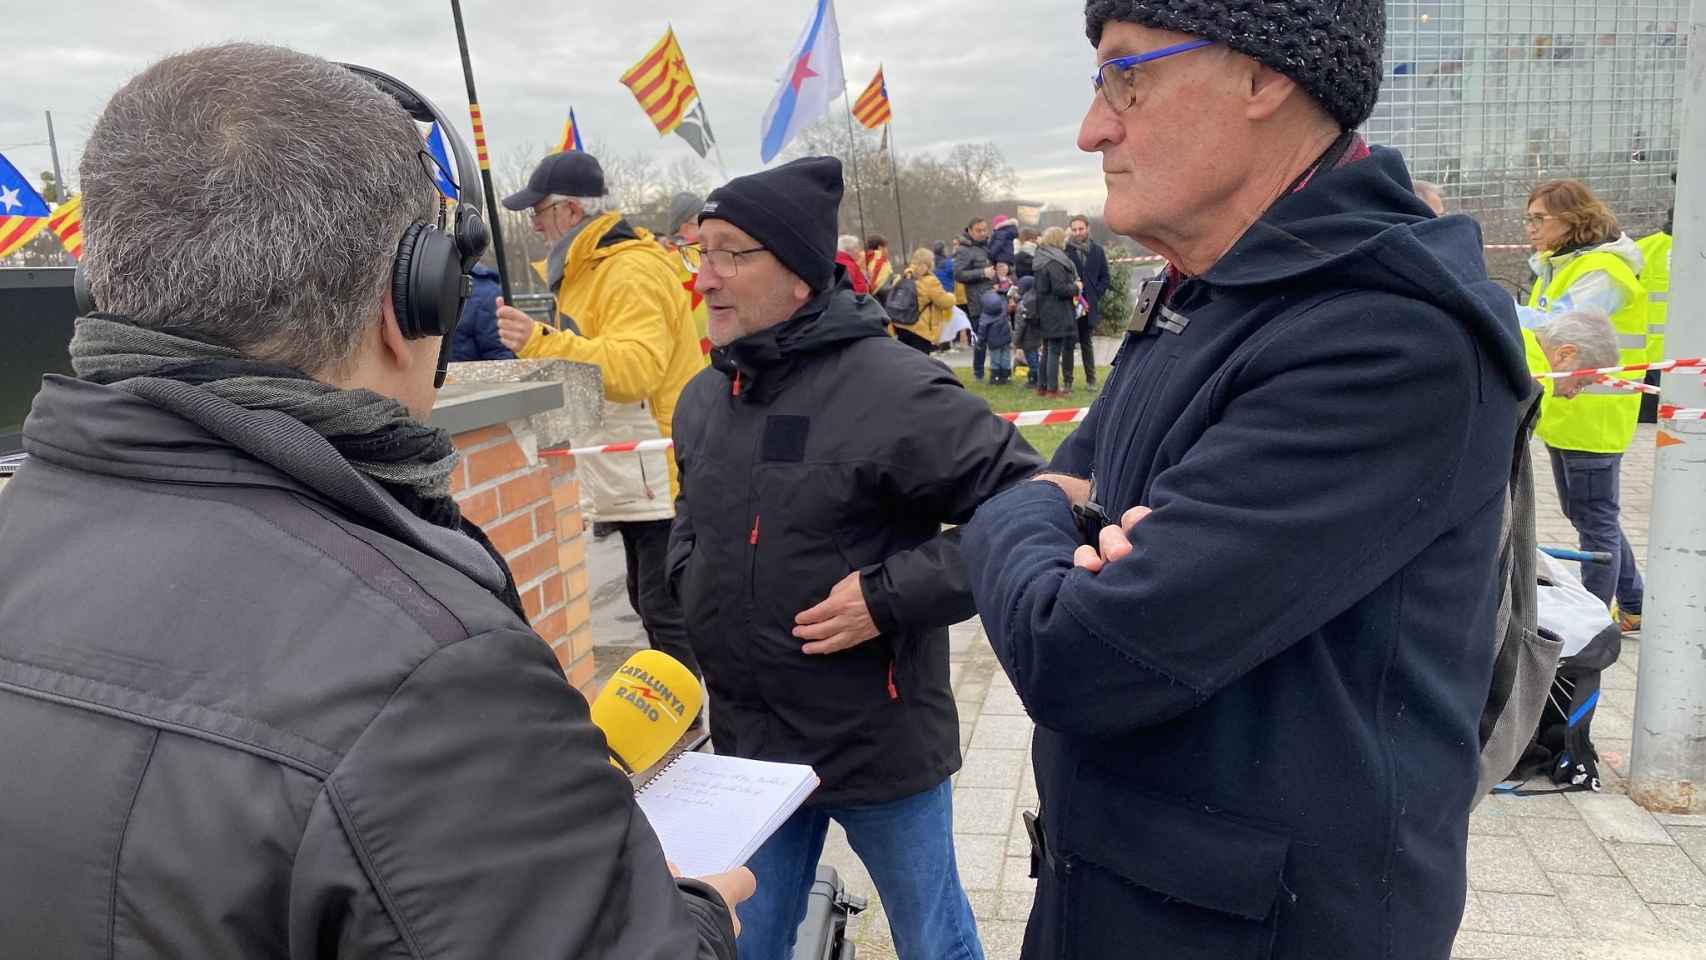 A la derecha en la foto, Pep Cruanyes, presidente de la denominada Caja de Solidaridad, en una manifestación secesionista en Estrasburgo en febrero de 2020 / ASSEMBLEA NACIONAL CATALANA  - FLICKR (CC BY-NC 2.0)